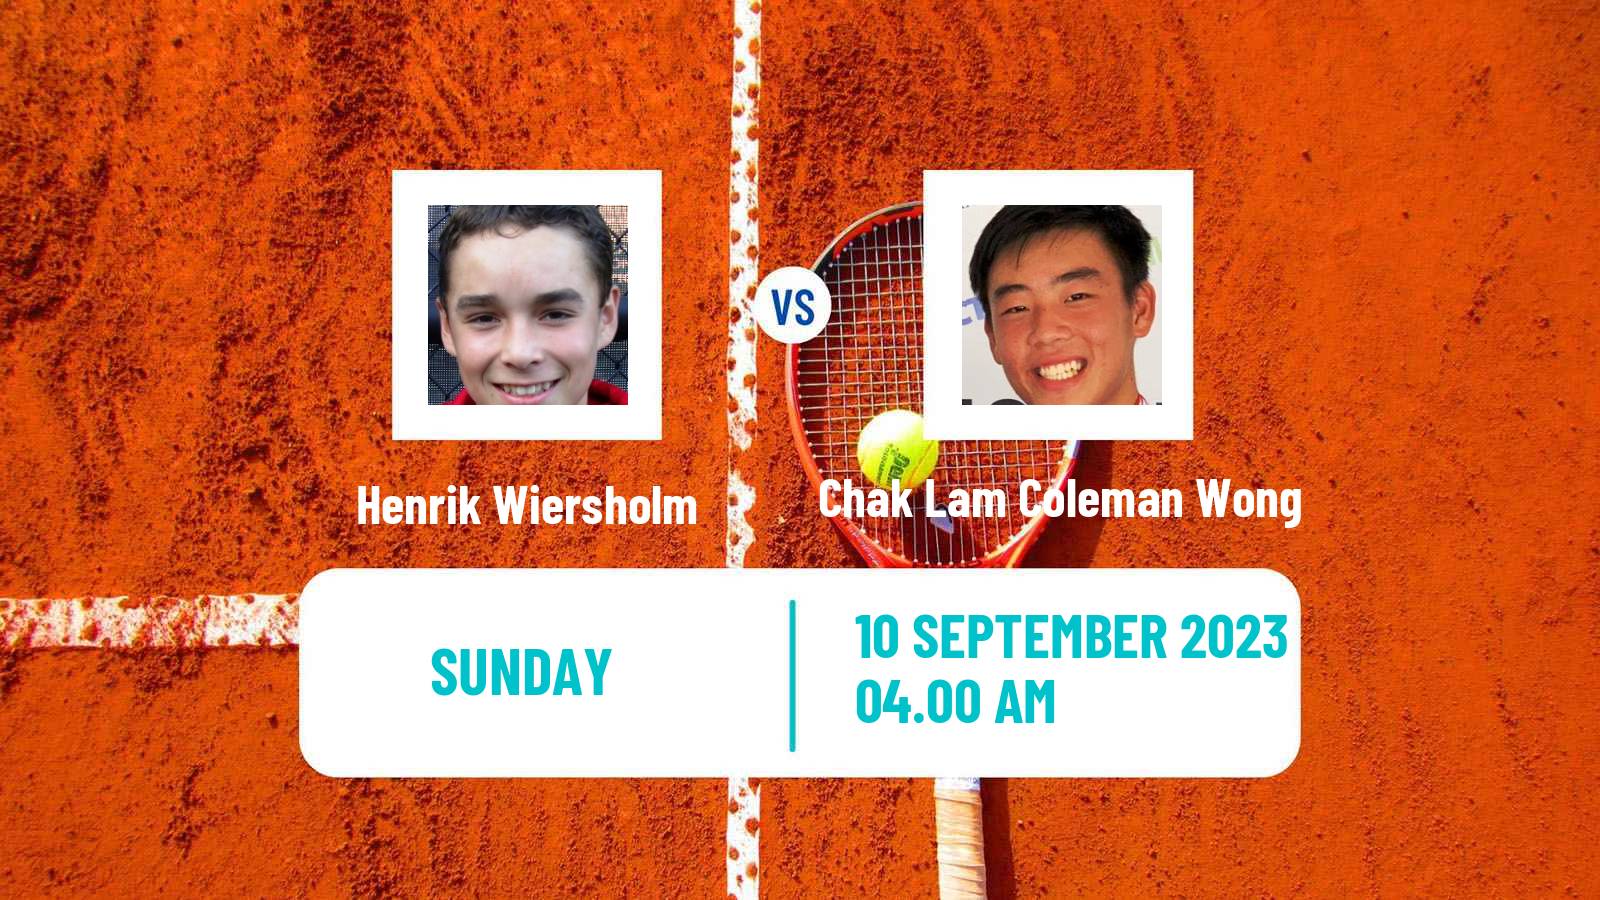 Tennis ITF M25 Hong Kong 2 Men Henrik Wiersholm - Chak Lam Coleman Wong